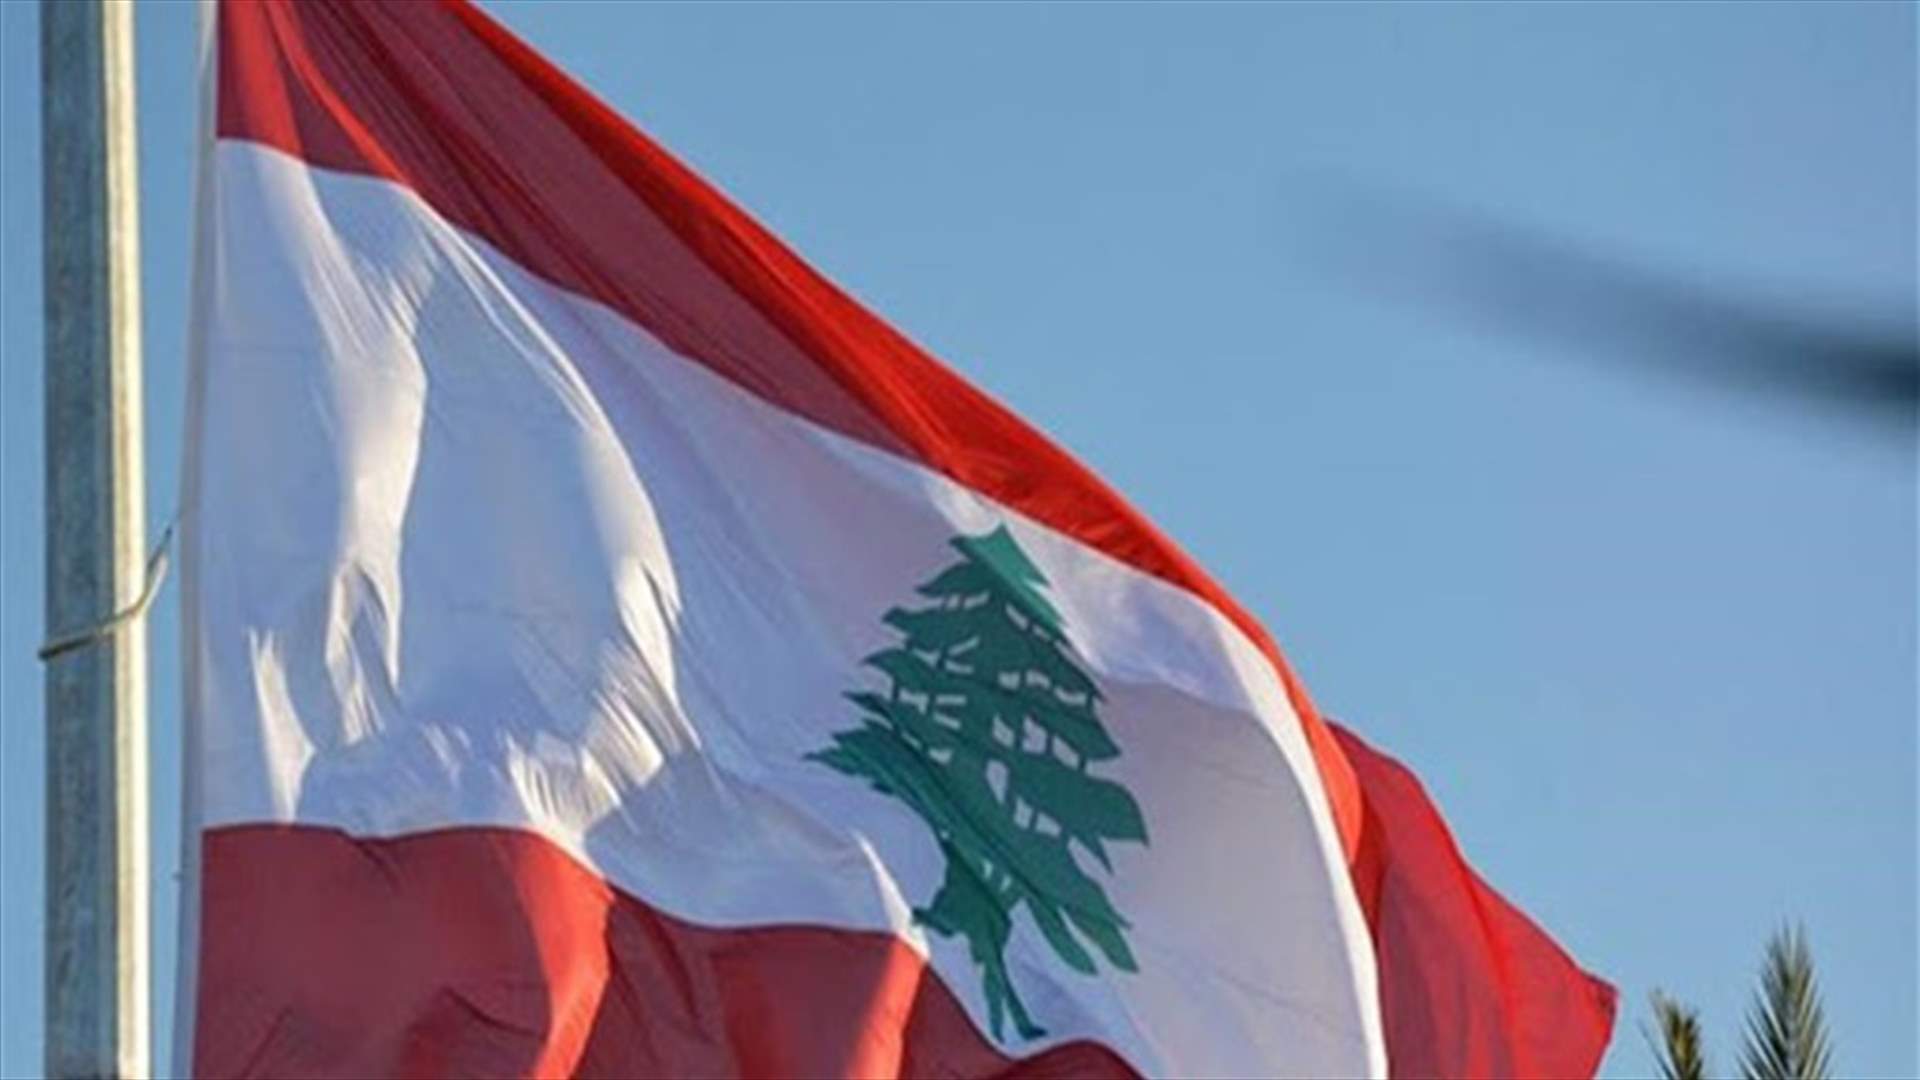 رسالة المجتمع الدولي لإنقاذ لبنان: تلازم الإصلاحات والنأي بالنفس (الشرق الاوسط)